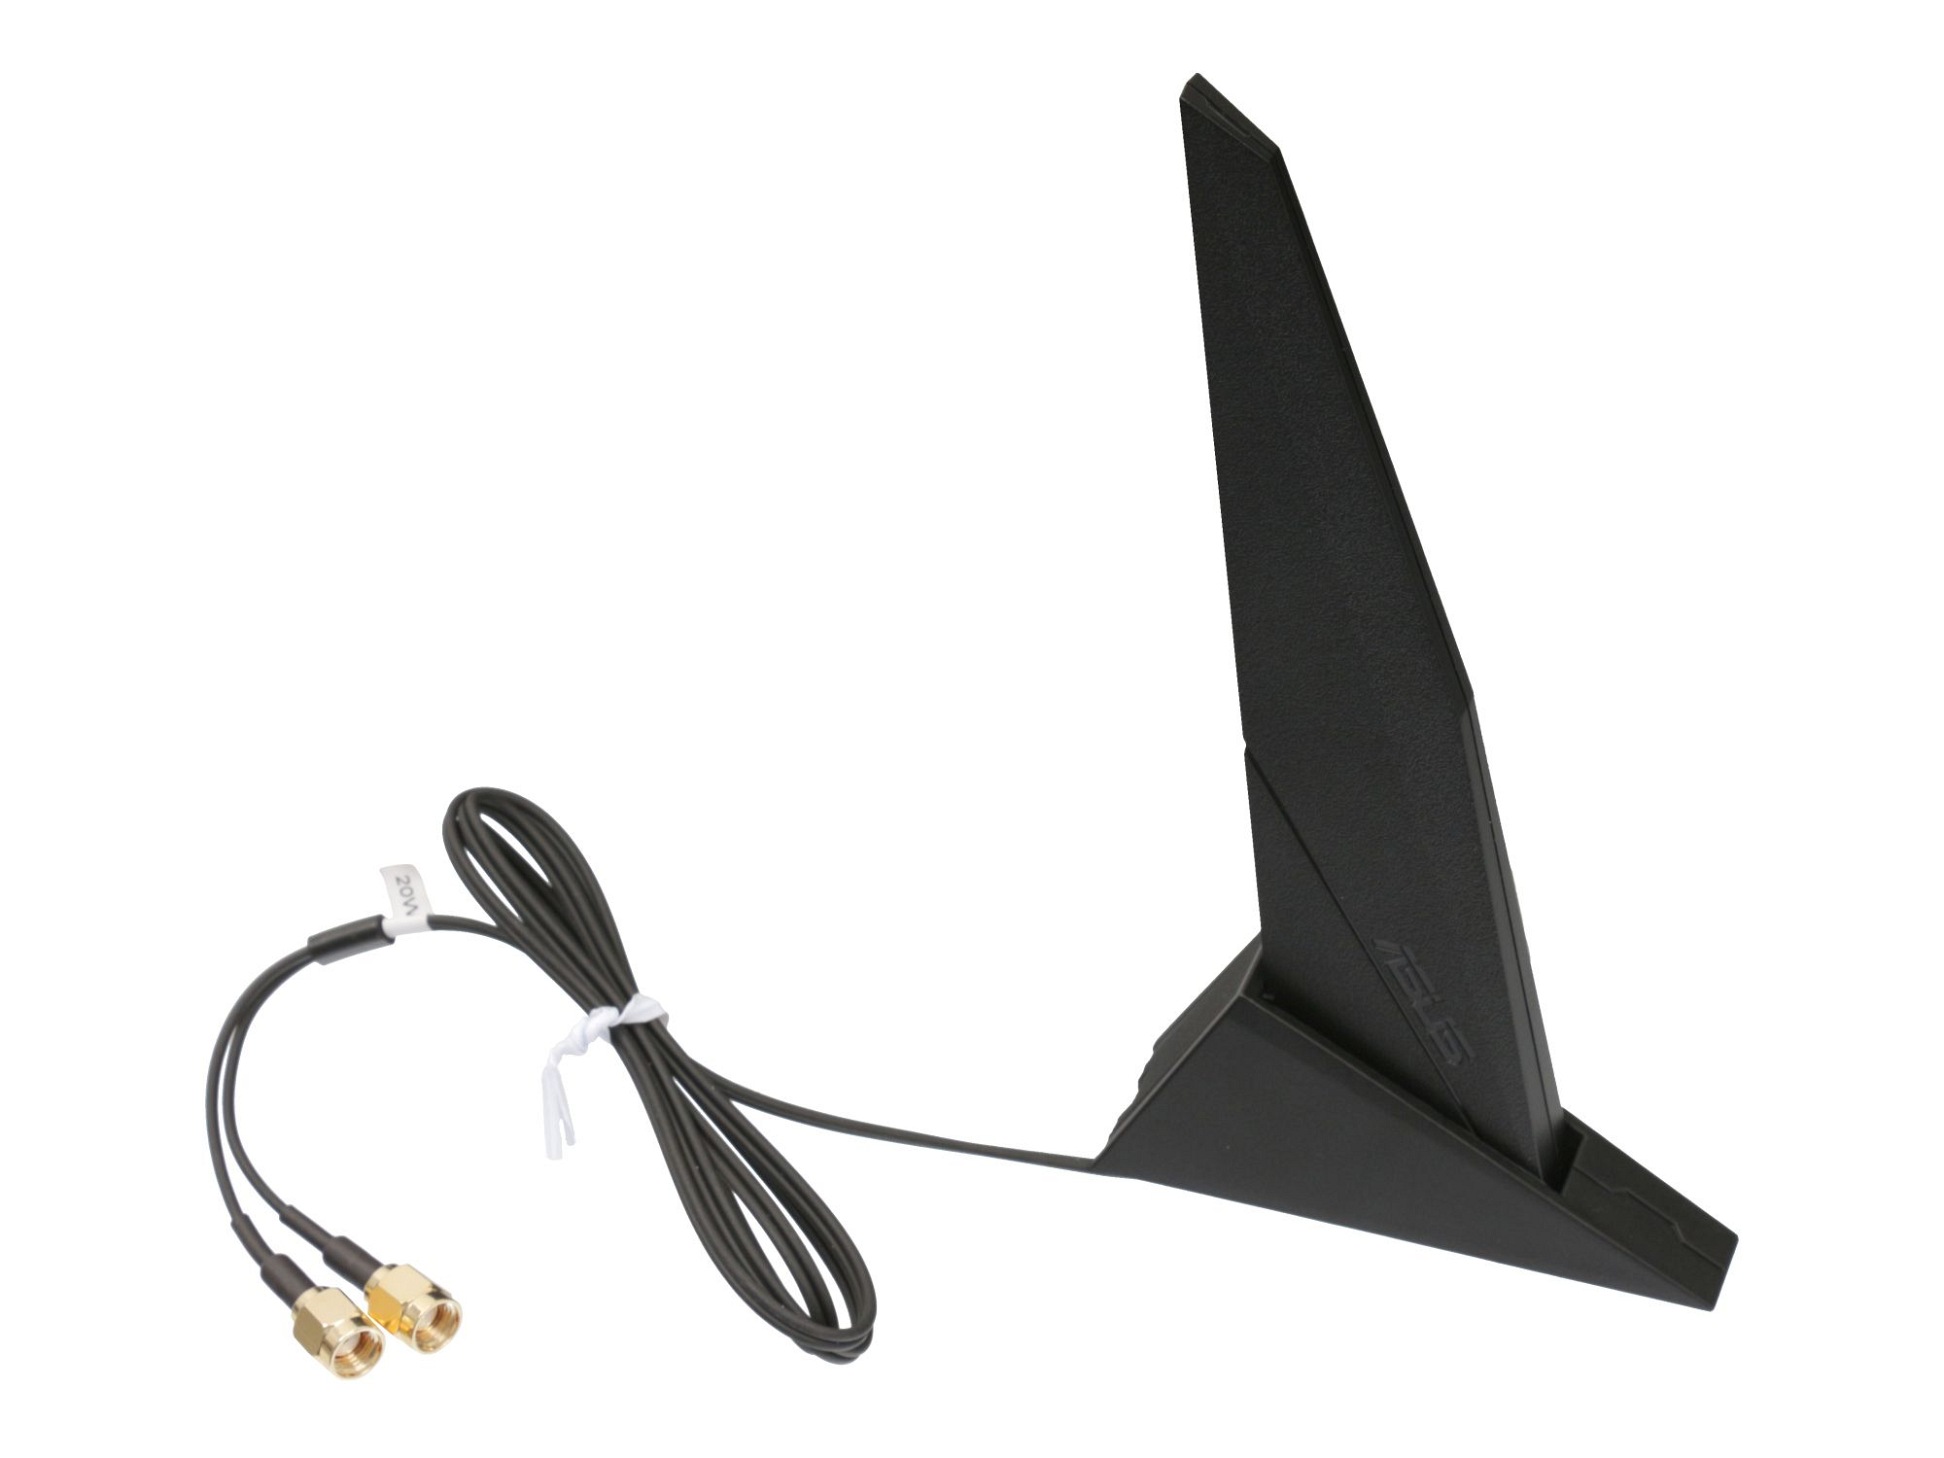 Externe Asus RP-SMA DIPOLE Antenne für Asus TUF Gaming B550M-Zaku (WI-FI)